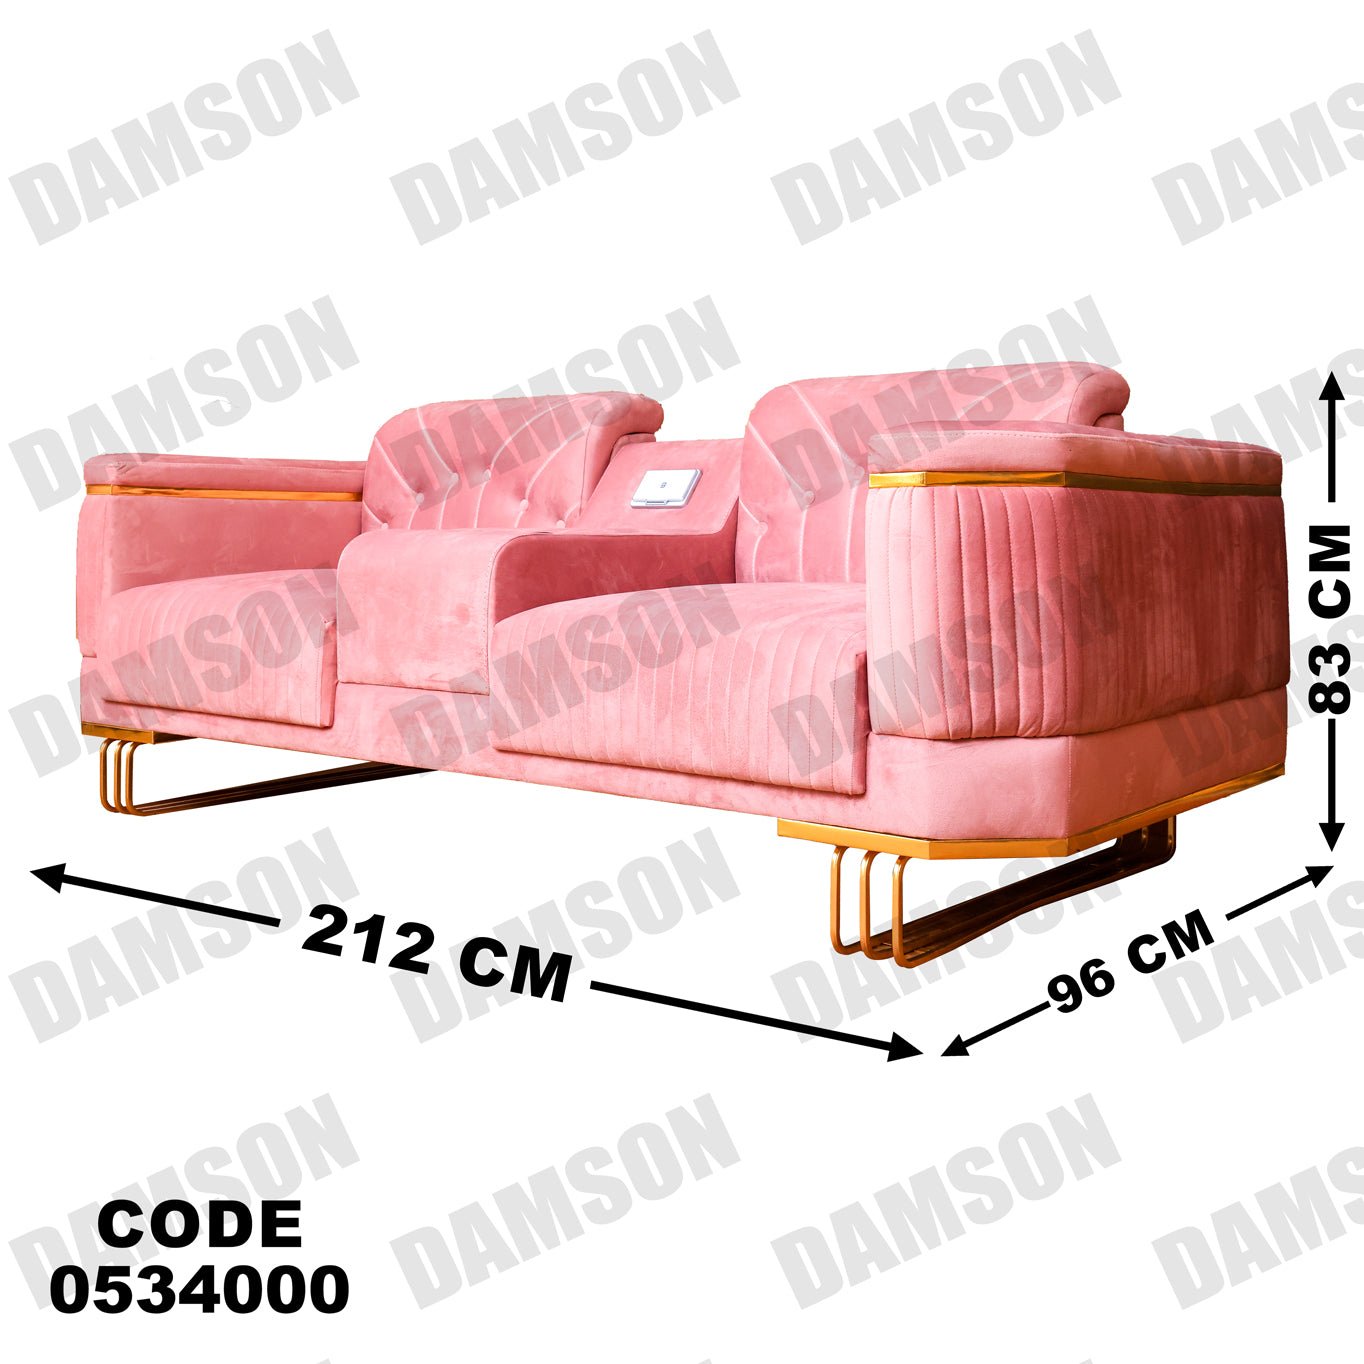 انترية 340 - Damson Furnitureانترية 340